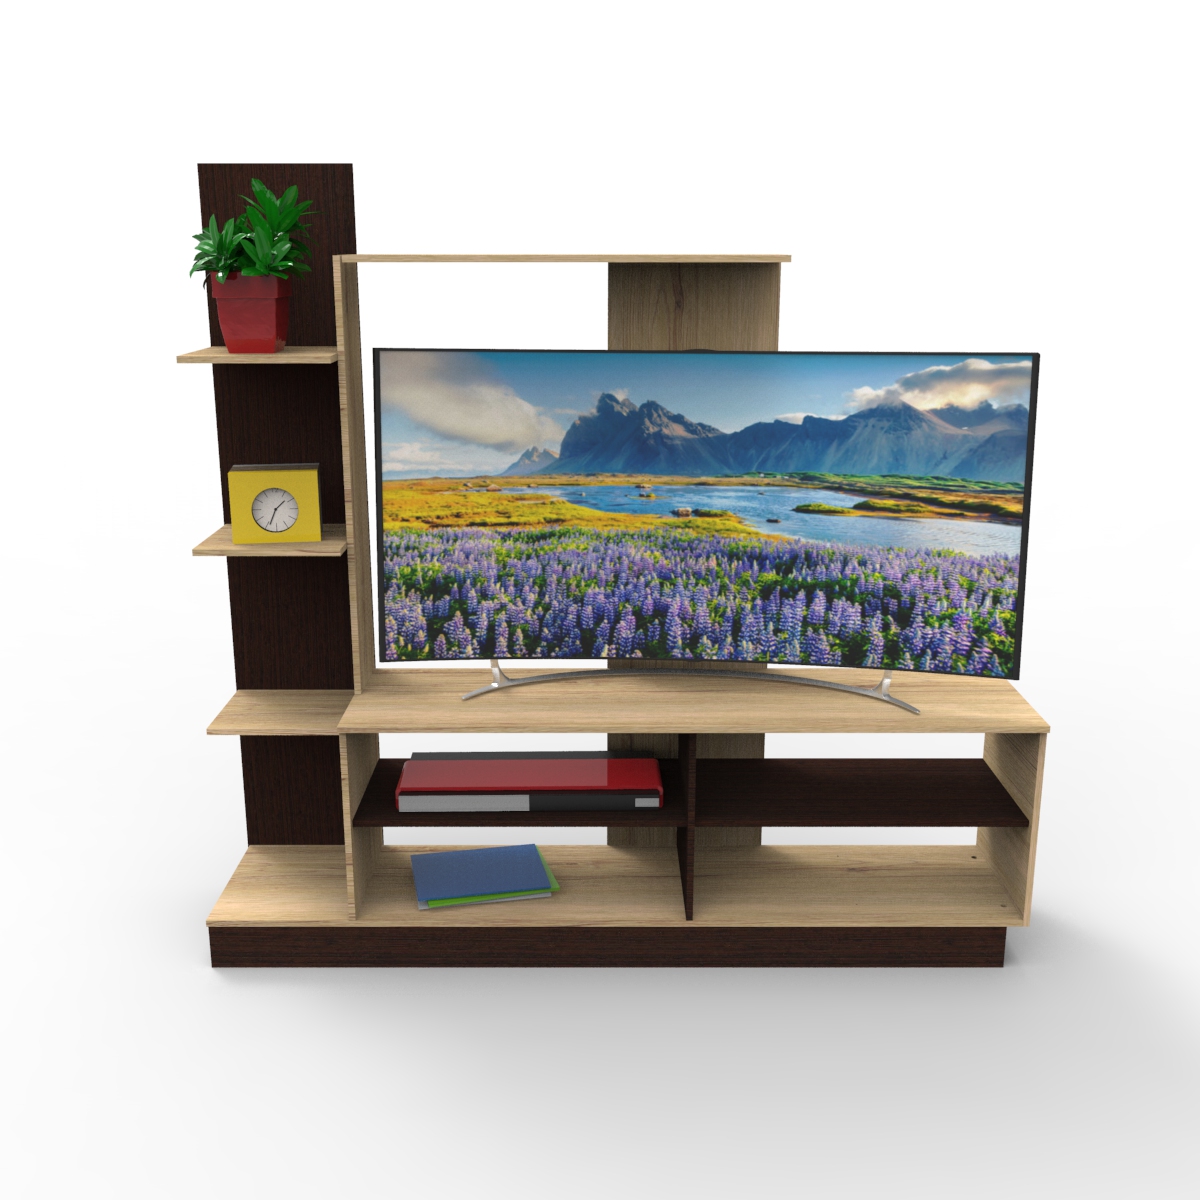  Muebles De TV Y Multimedia De Entretenimiento - De $100 A $500  / Muebles De TV Y: Hogar Y Cocina